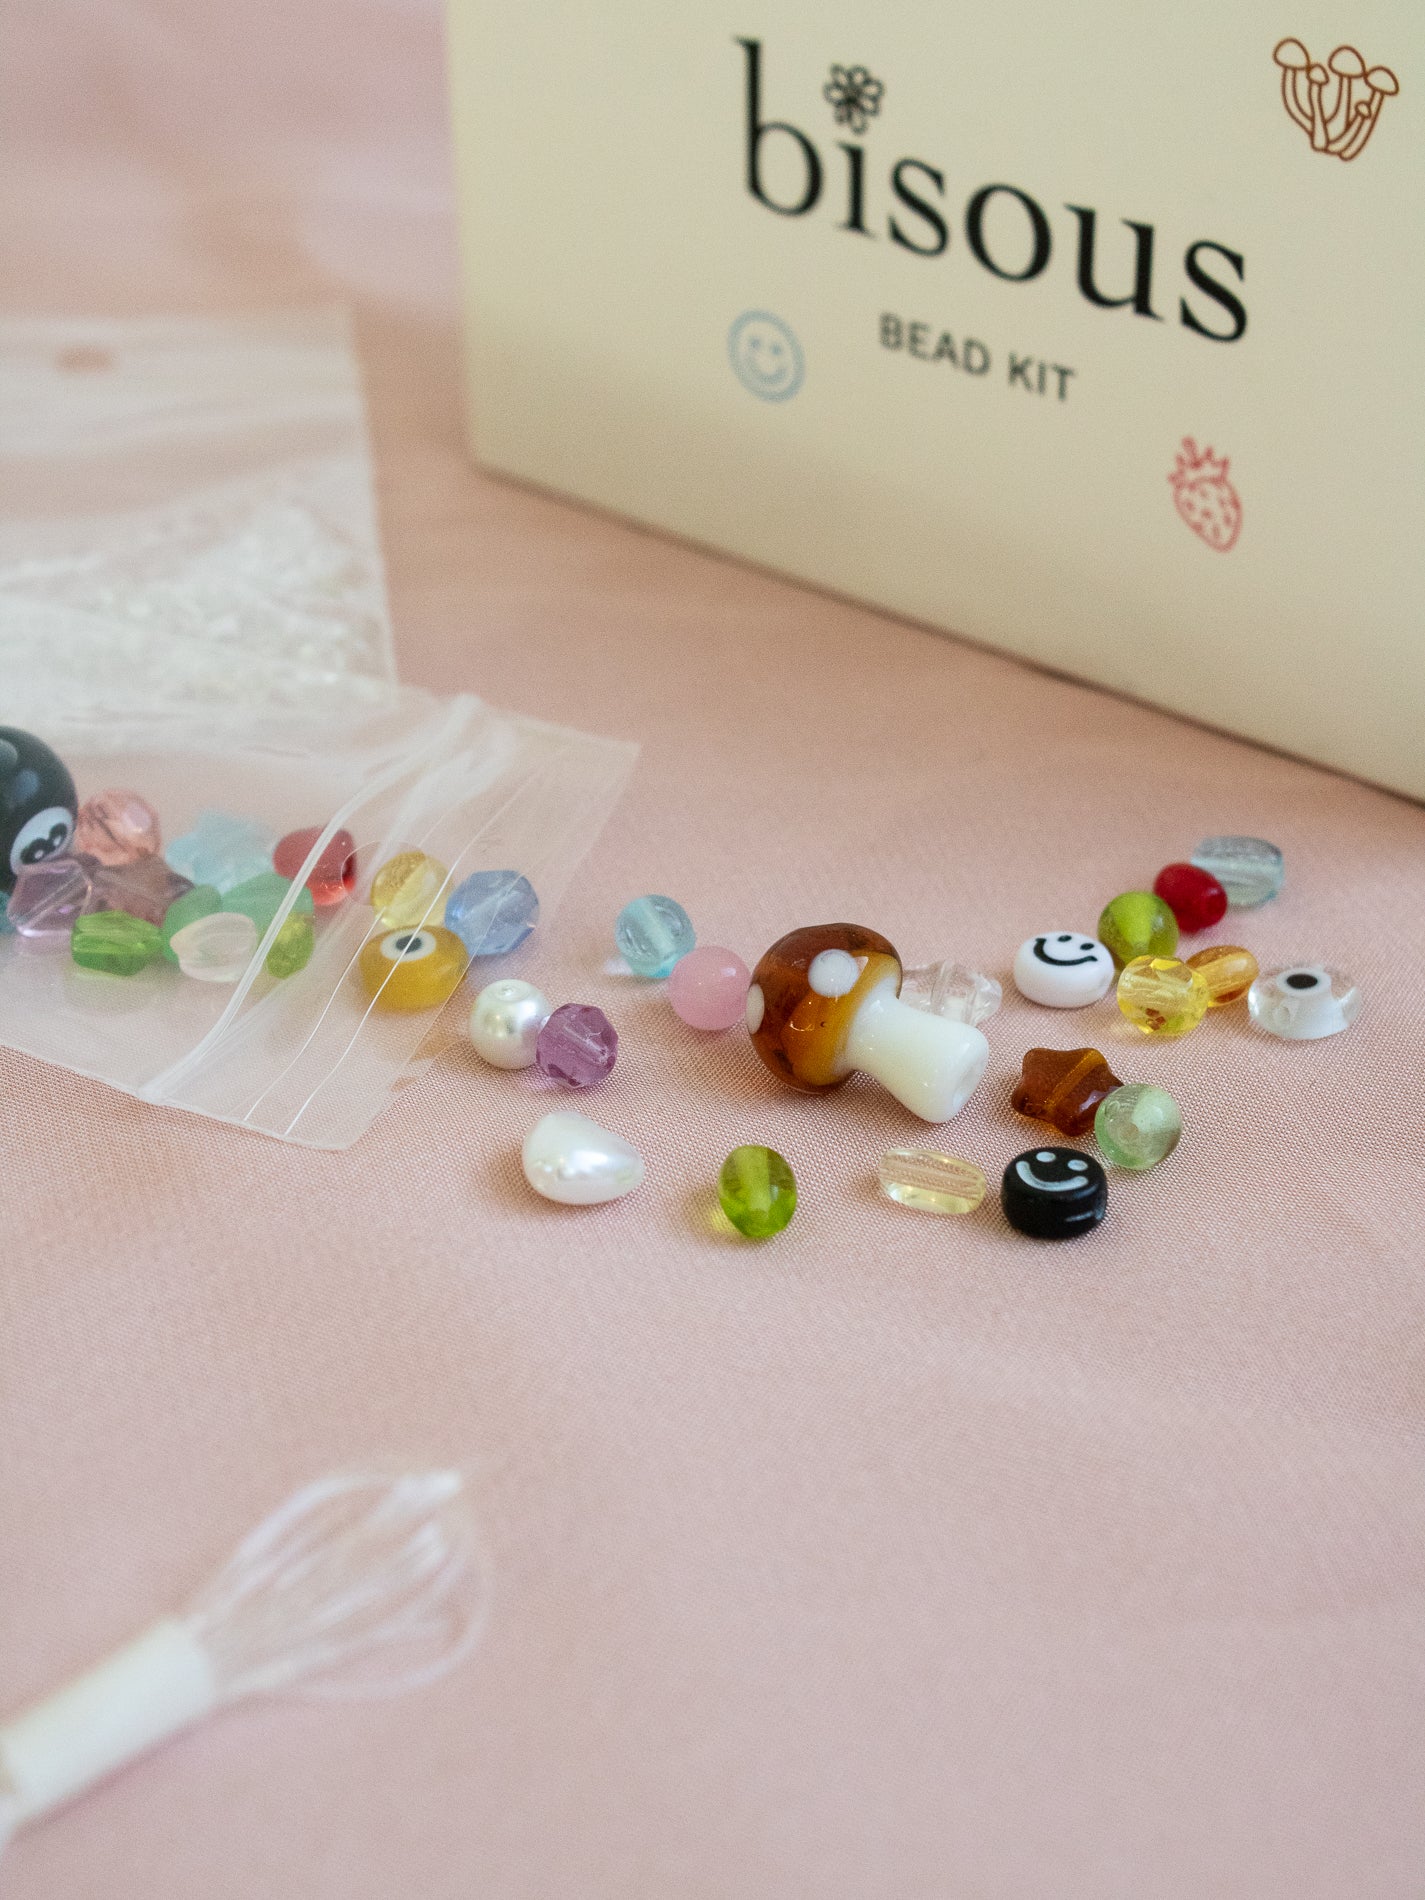 Bisous Bead Kit